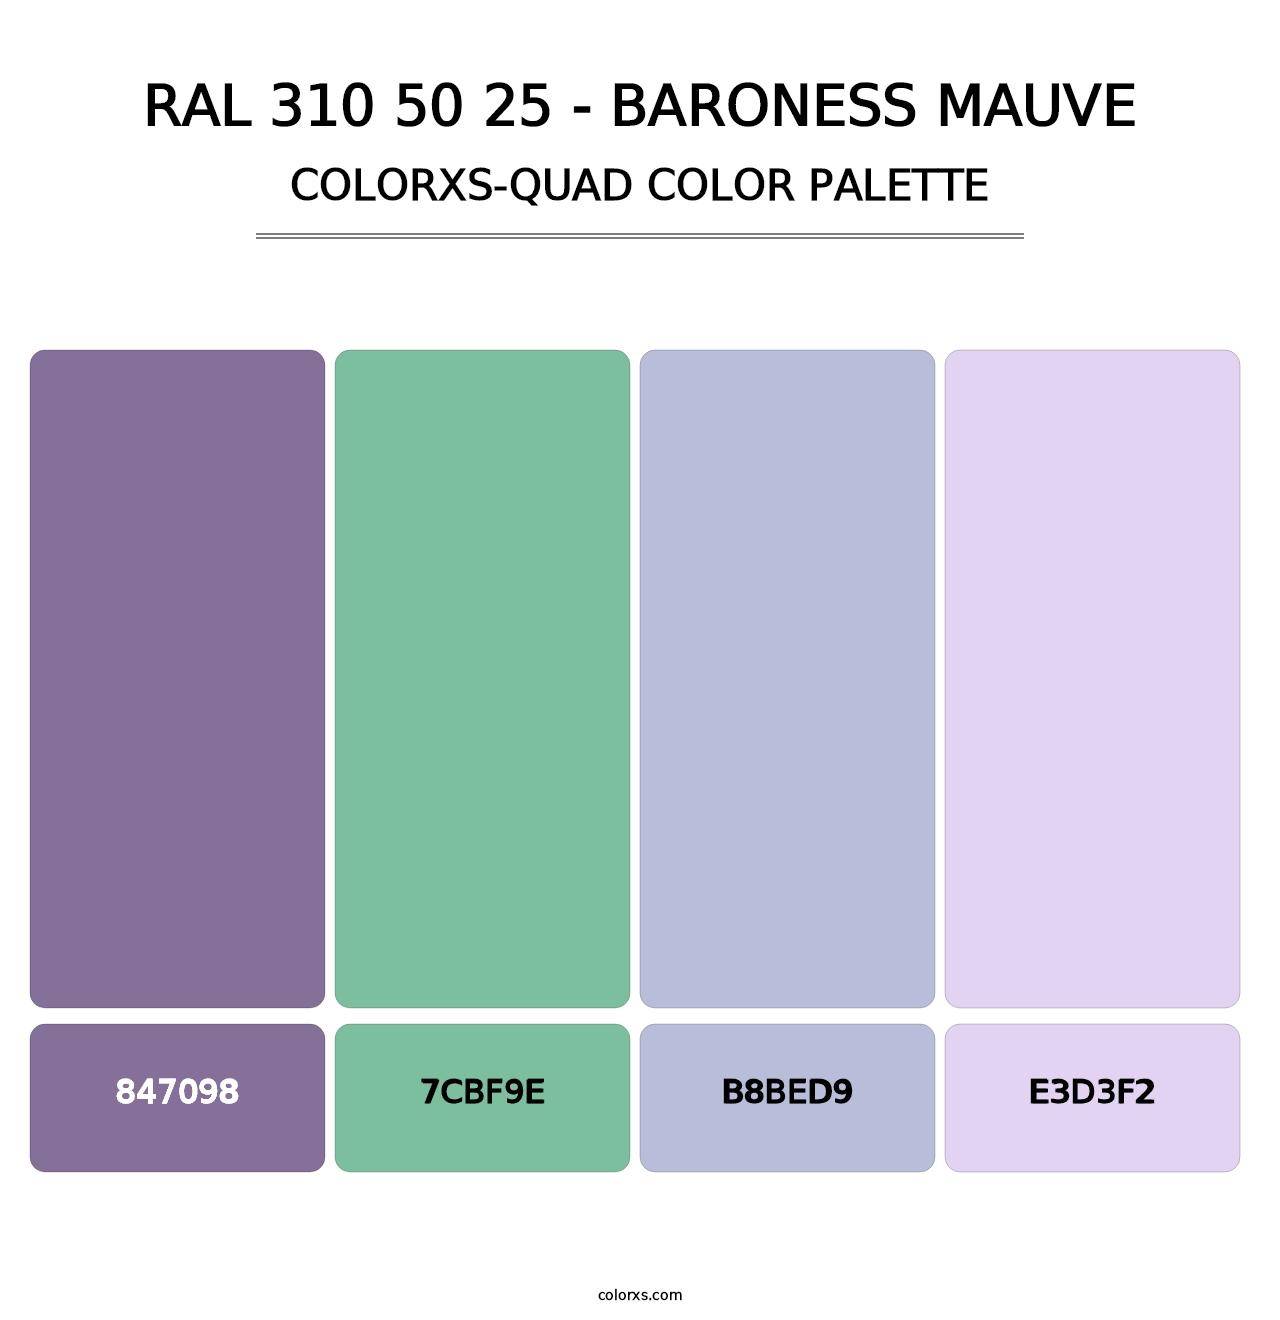 RAL 310 50 25 - Baroness Mauve - Colorxs Quad Palette